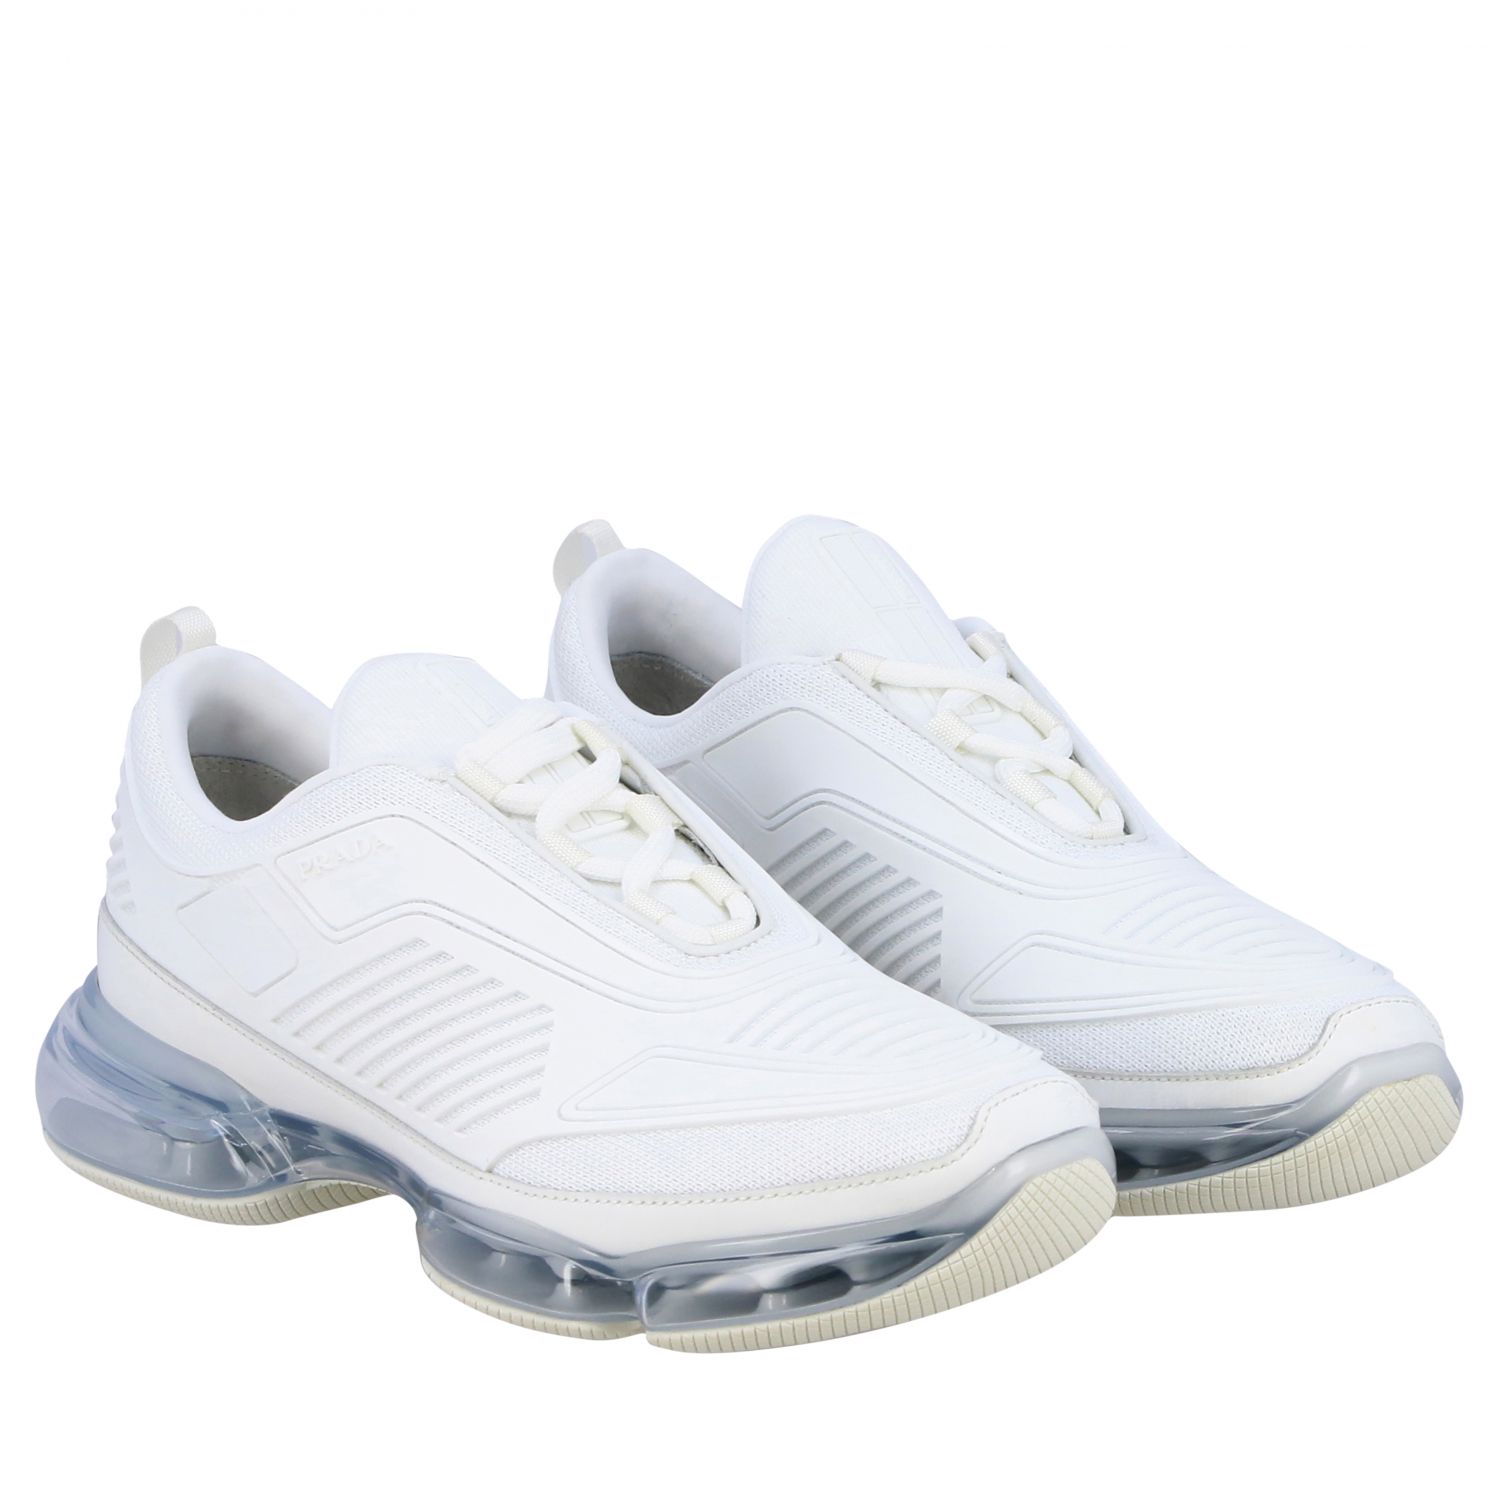 schoolbord van nu af aan basketbal PRADA: new air sole cloudbust sneakers - White | Prada sneakers 2EG298 2OD8  online on GIGLIO.COM